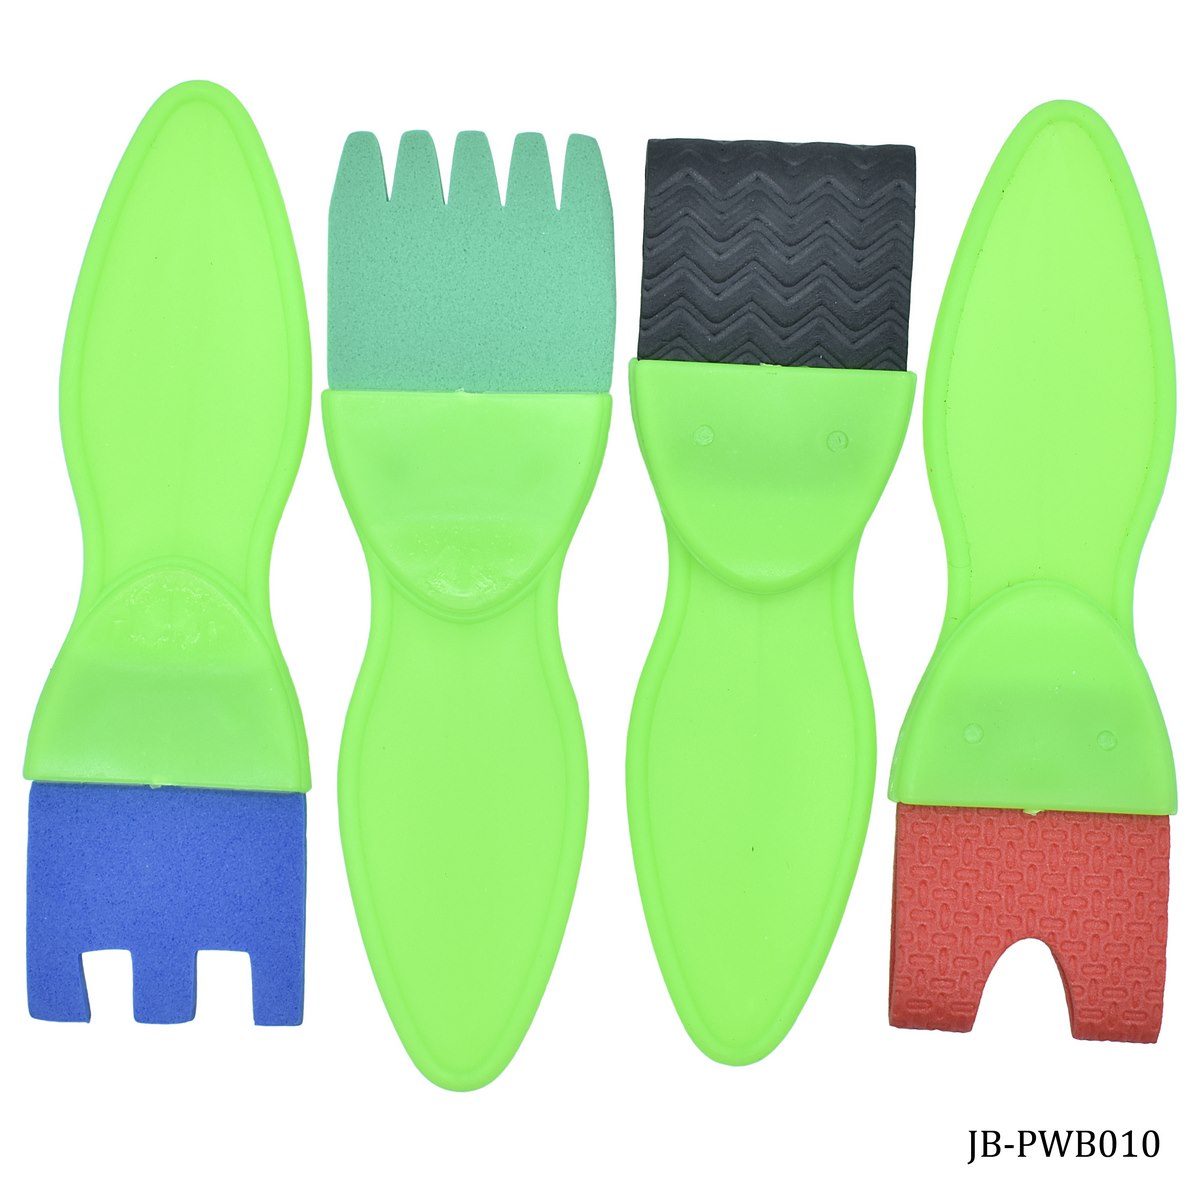 jags-mumbai Brush Sponge Brush Set 4pcs Shapes